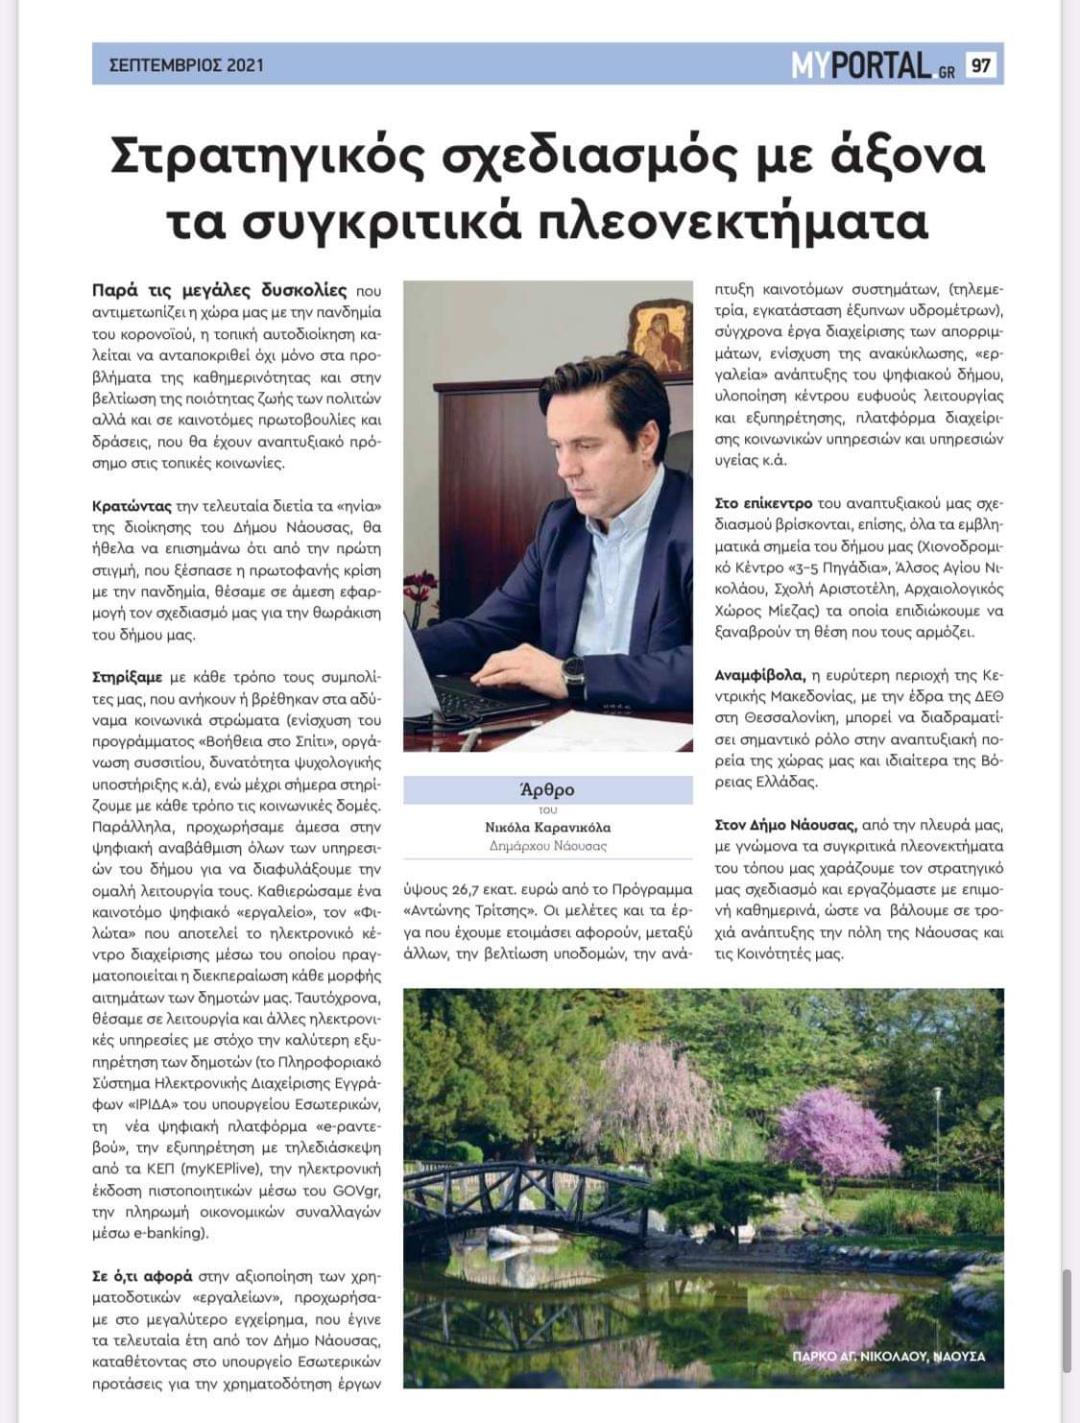 Άρθρο Δημάρχου Νάουσας Νικόλα Καρανικόλα στην έντυπη ειδική έκδοση του ιστότοπου MyPortal.gr για την 85η ΔΕΘ